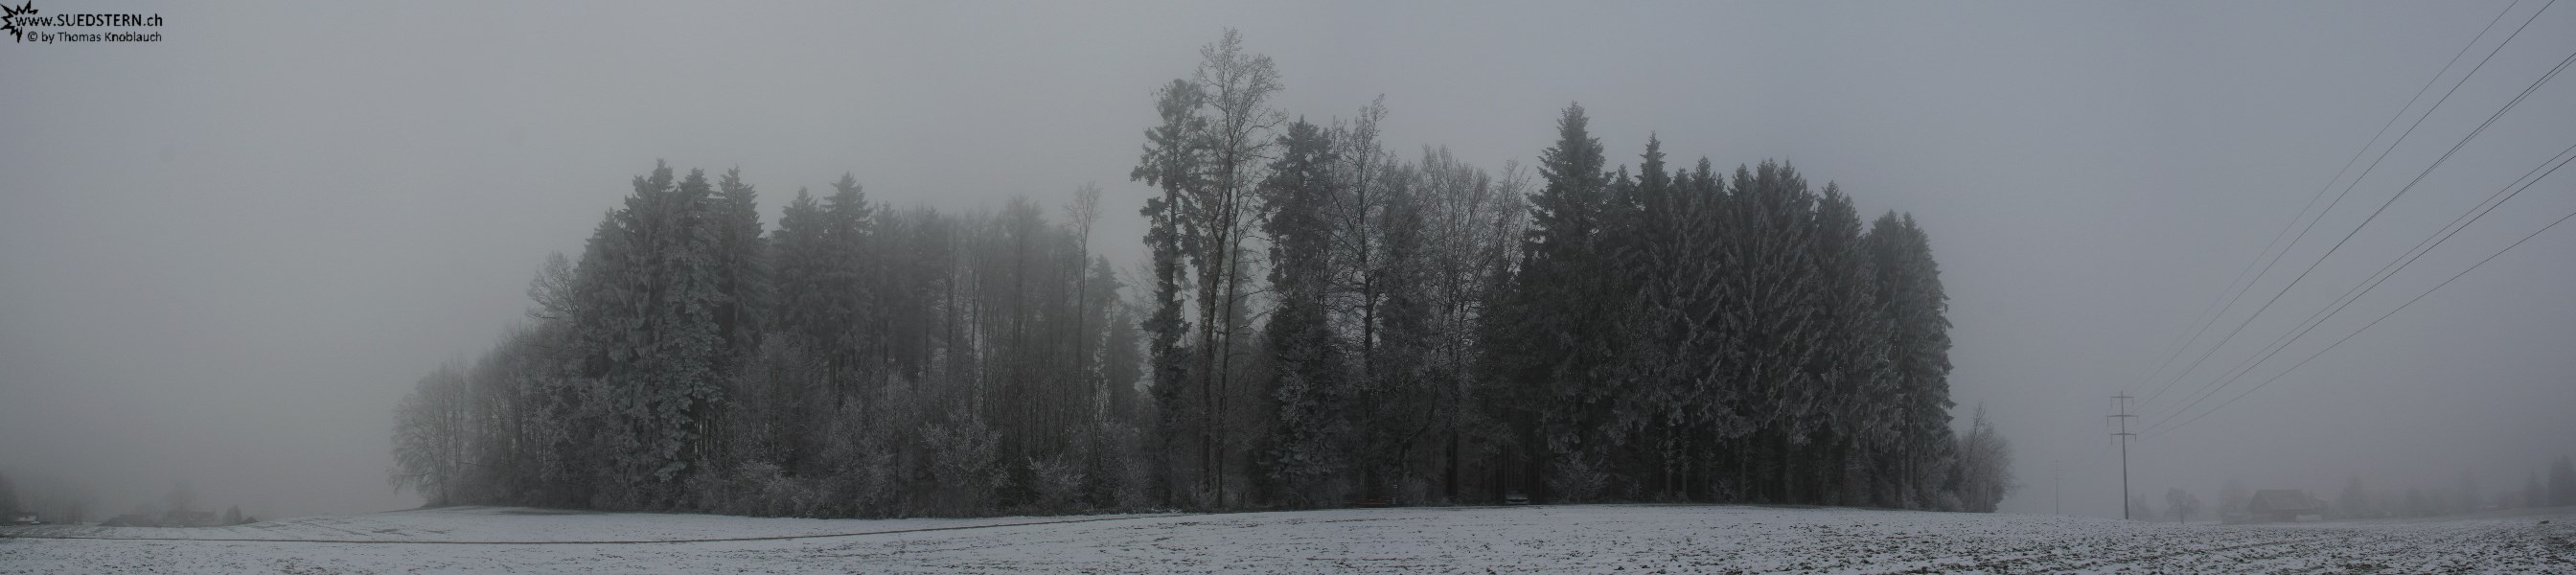 2007-12-23 - Winterforrest near Hinwil, Switzerland